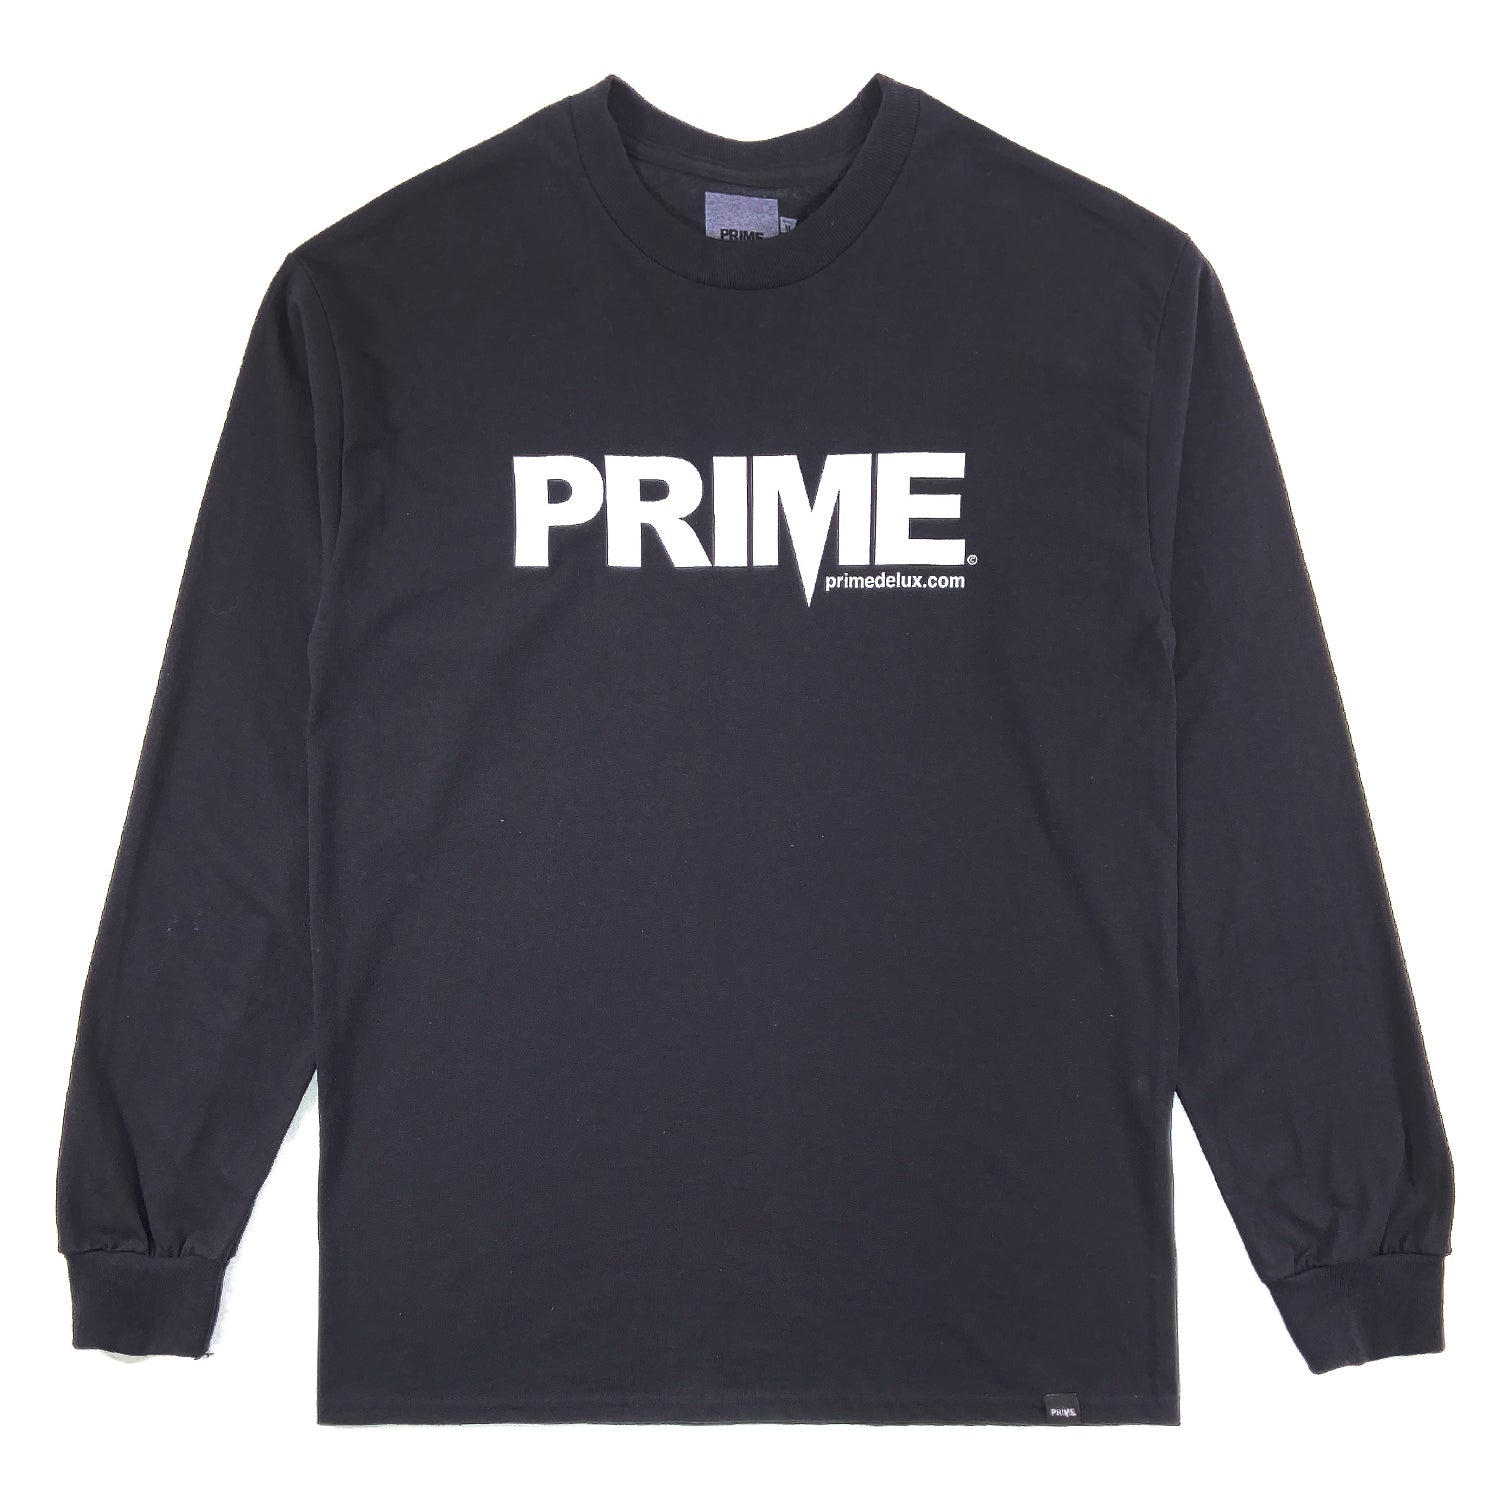 PRIME DELUX OG PREMIUM LONG SLEEVE T-SHIRT - BLACK / WHITE - Prime Delux Store